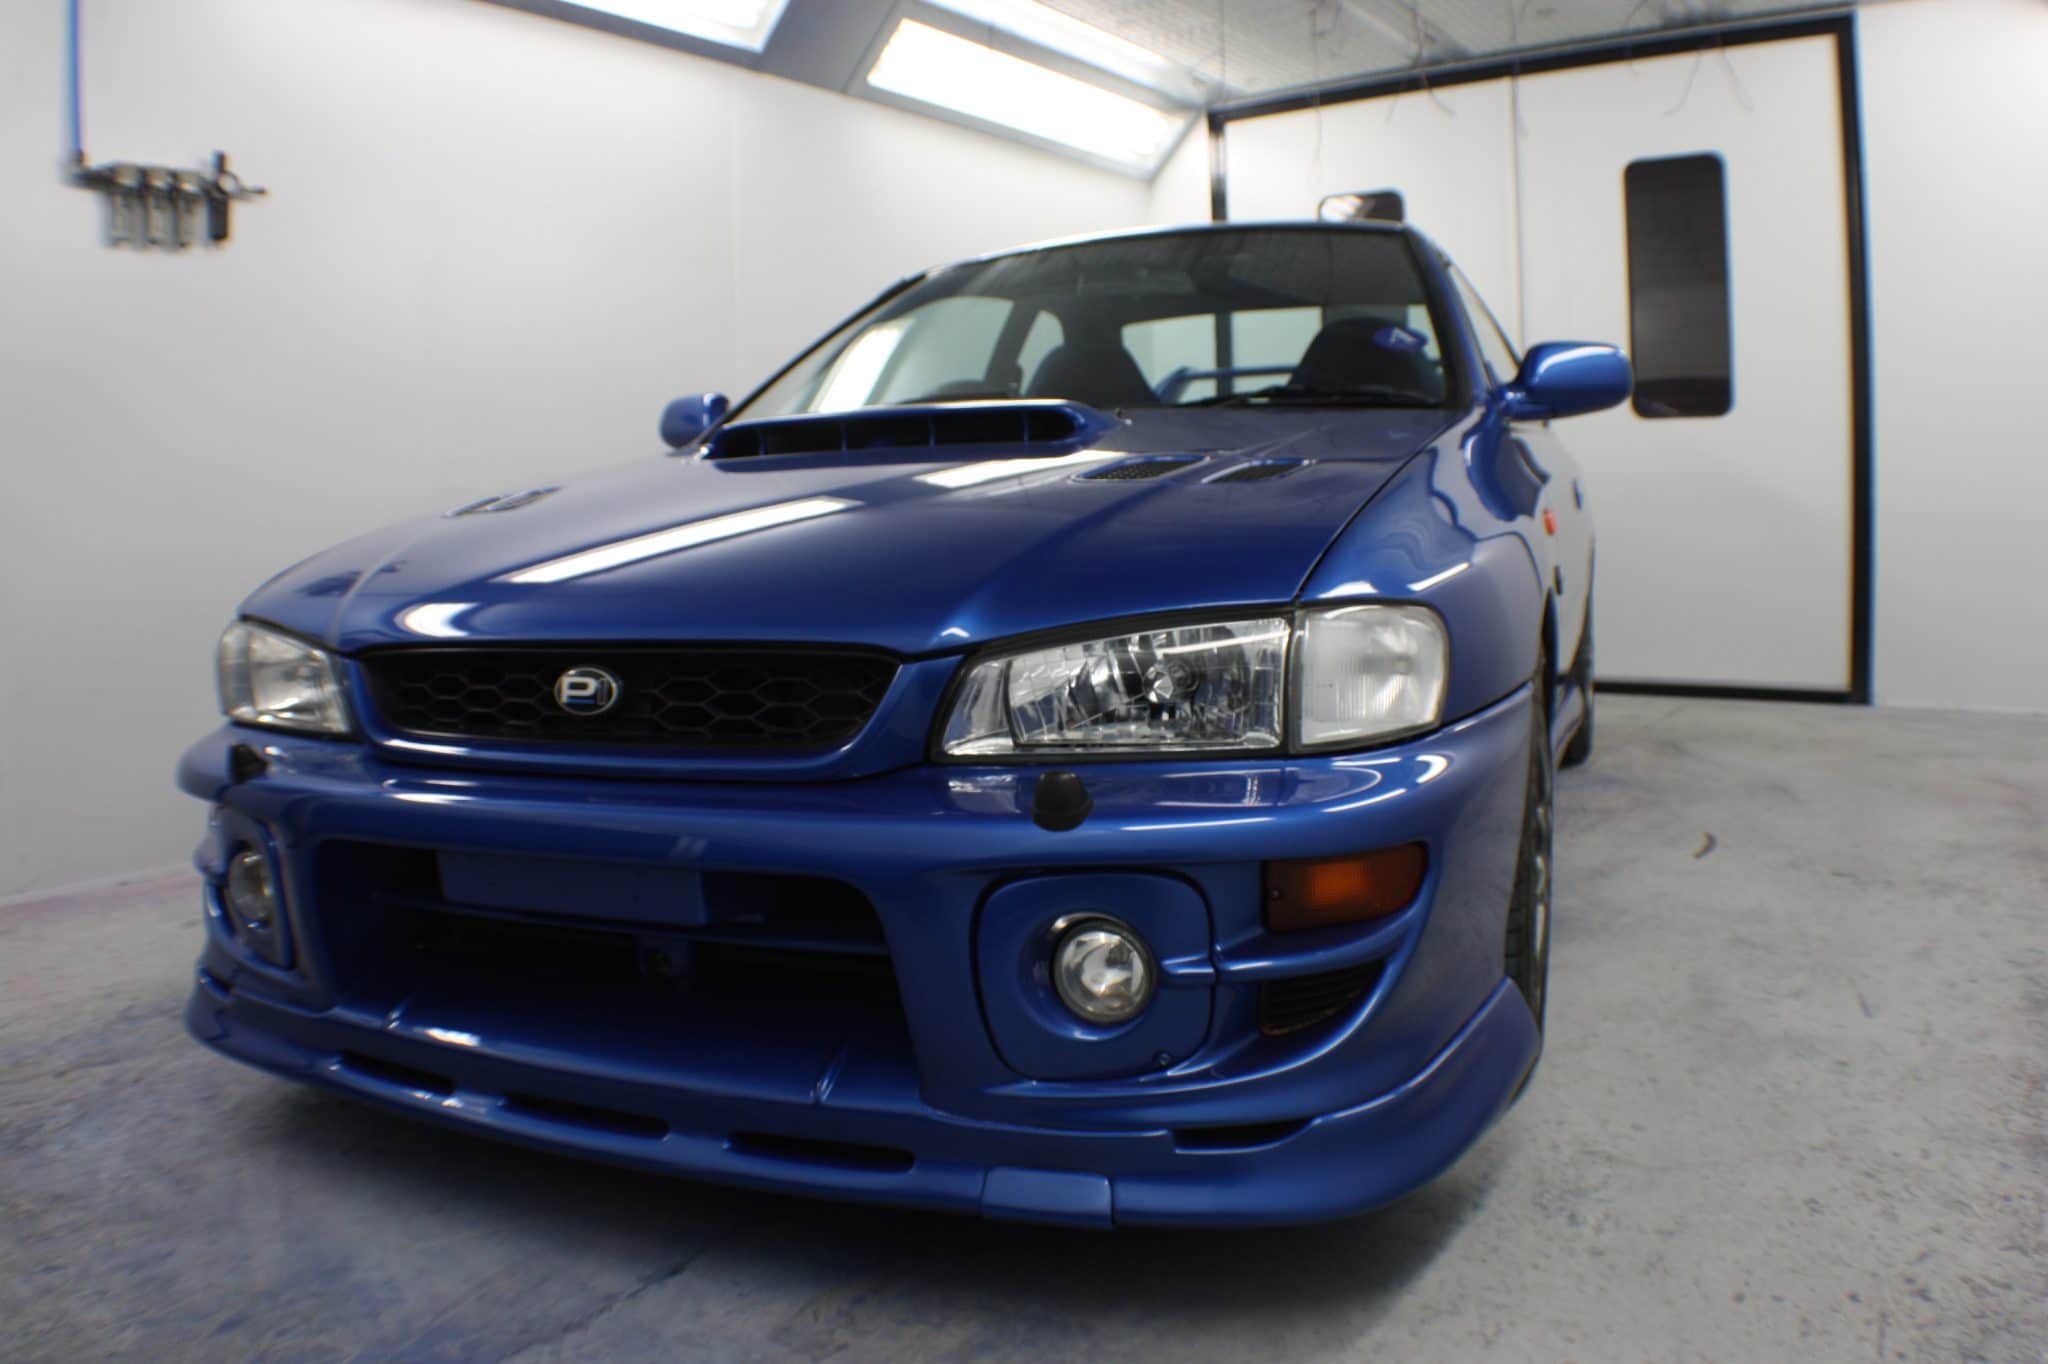 Subaru pps